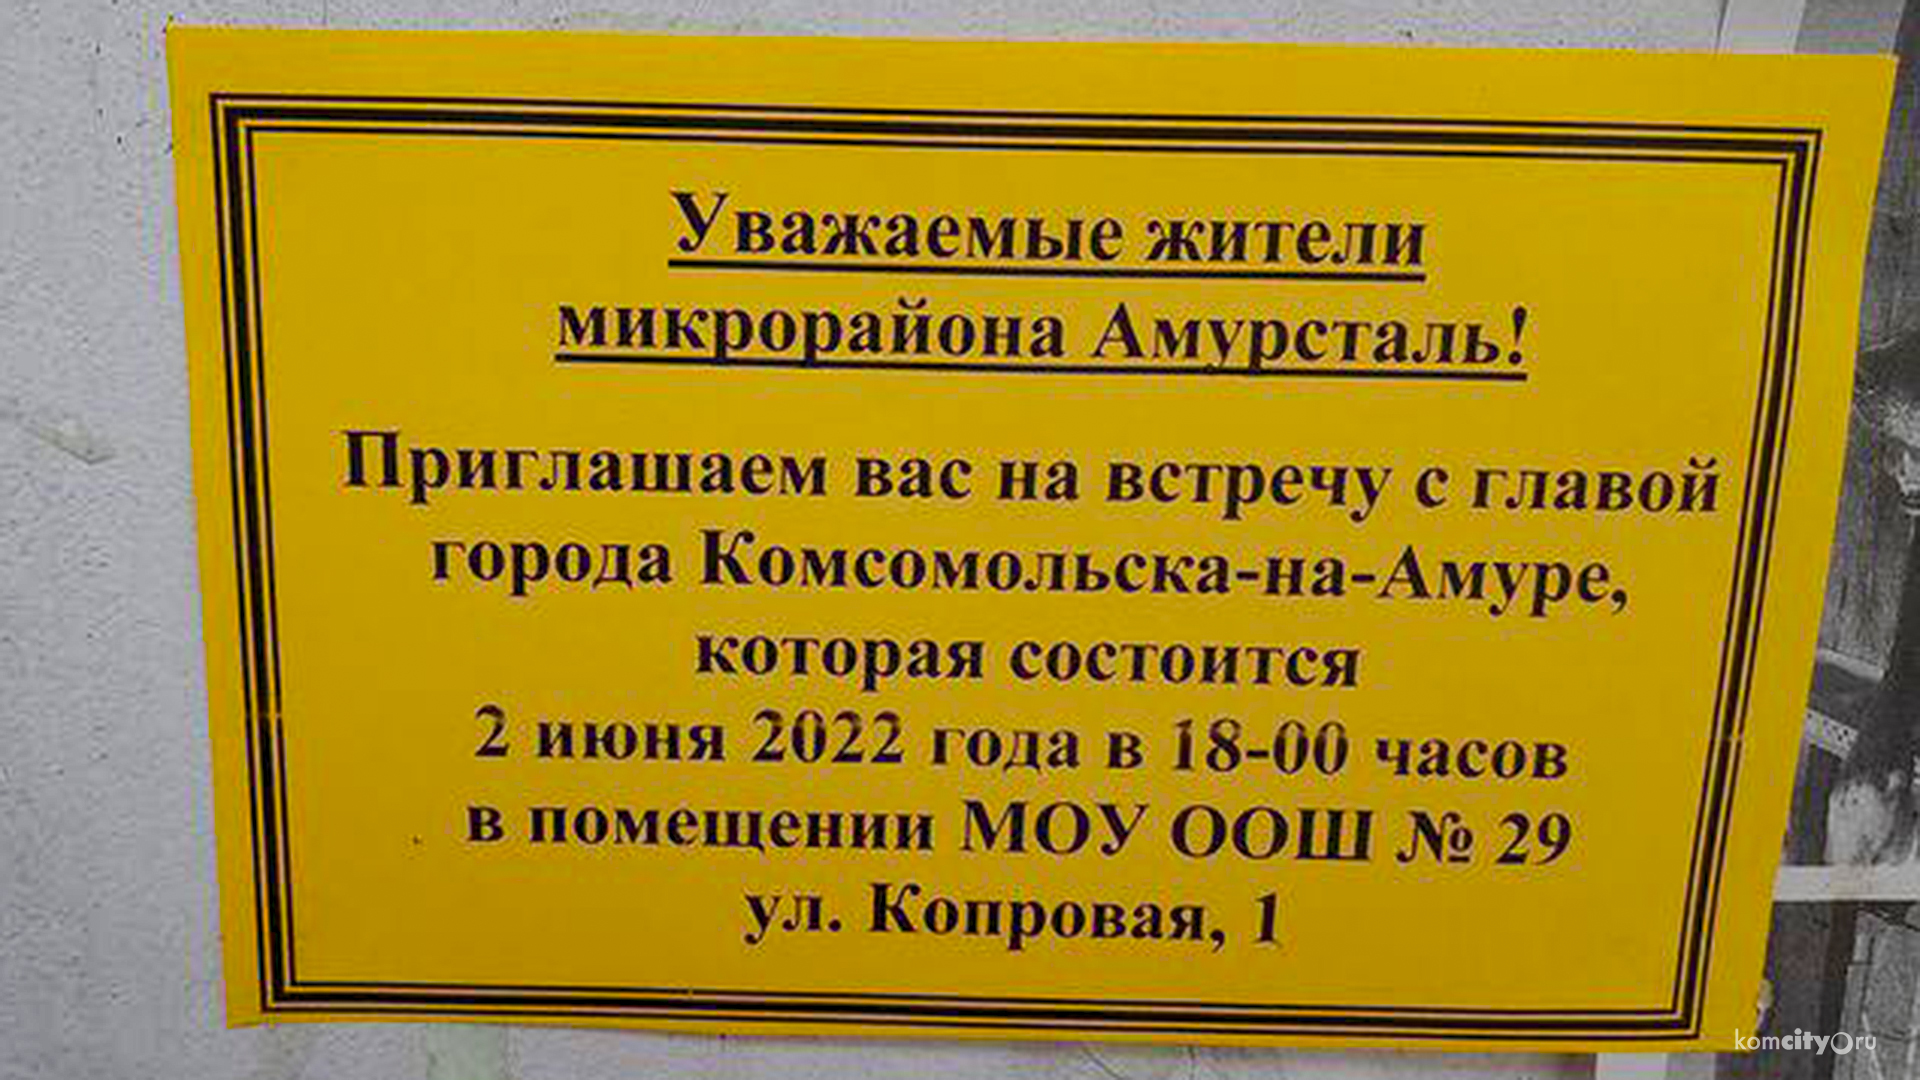 Завтра на Амурстали пройдёт встреча главы Комсомольска-на-Амуре с жителями